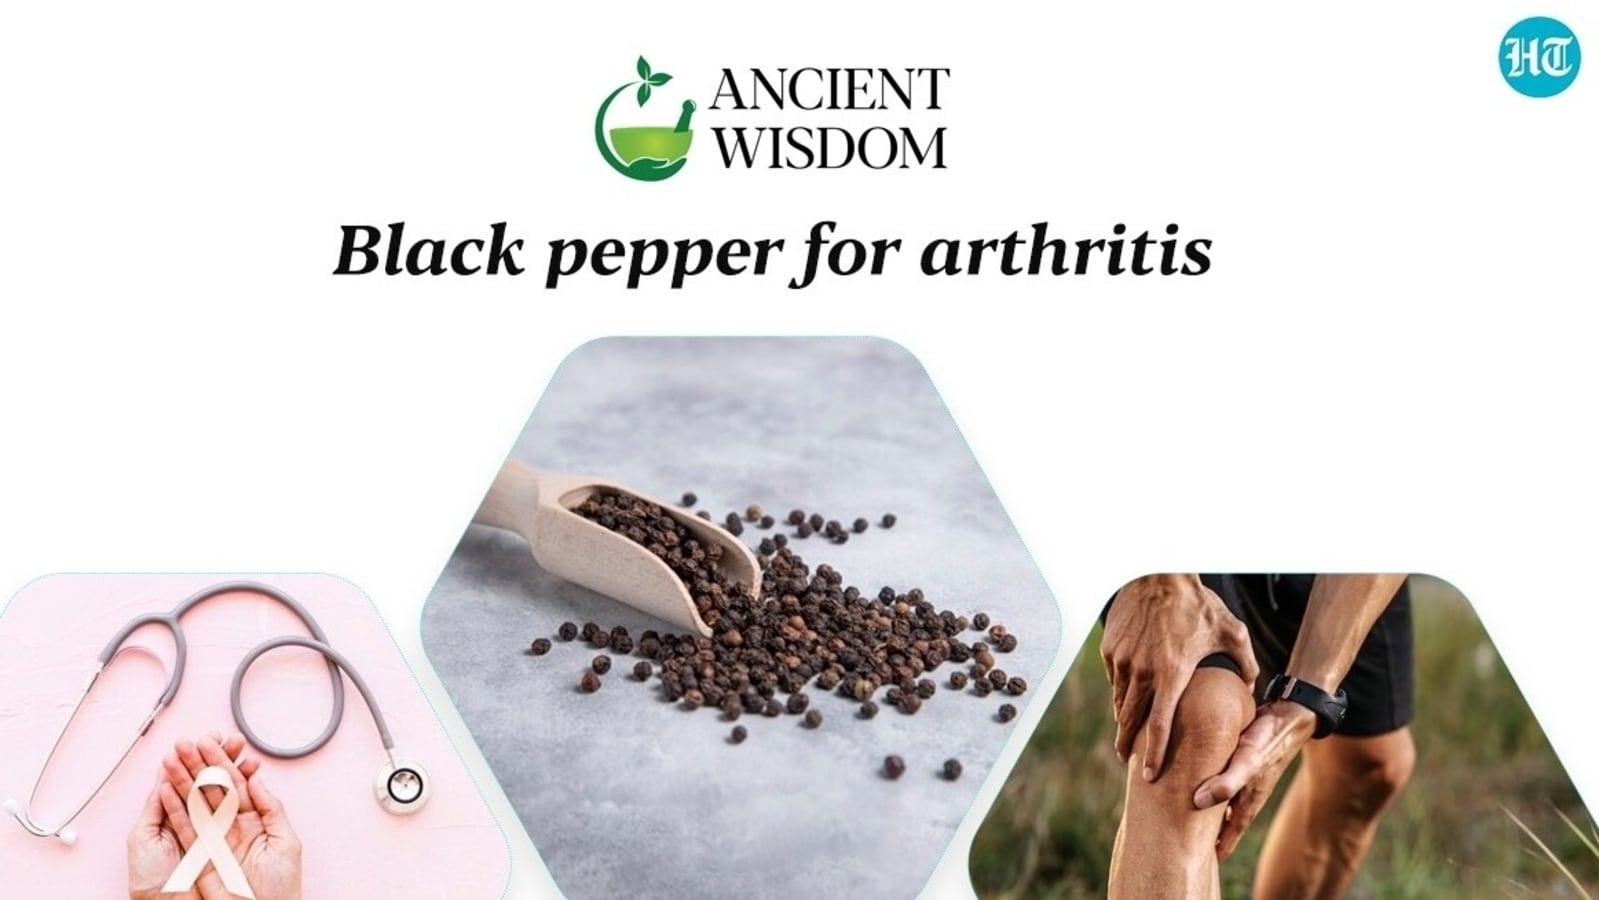 प्राचीन ज्ञान भाग 25: काली मिर्च, एक गर्म मसाला जो कैंसर को रोकने में मदद कर सकता है, गठिया के दर्द से राहत दिला सकता है